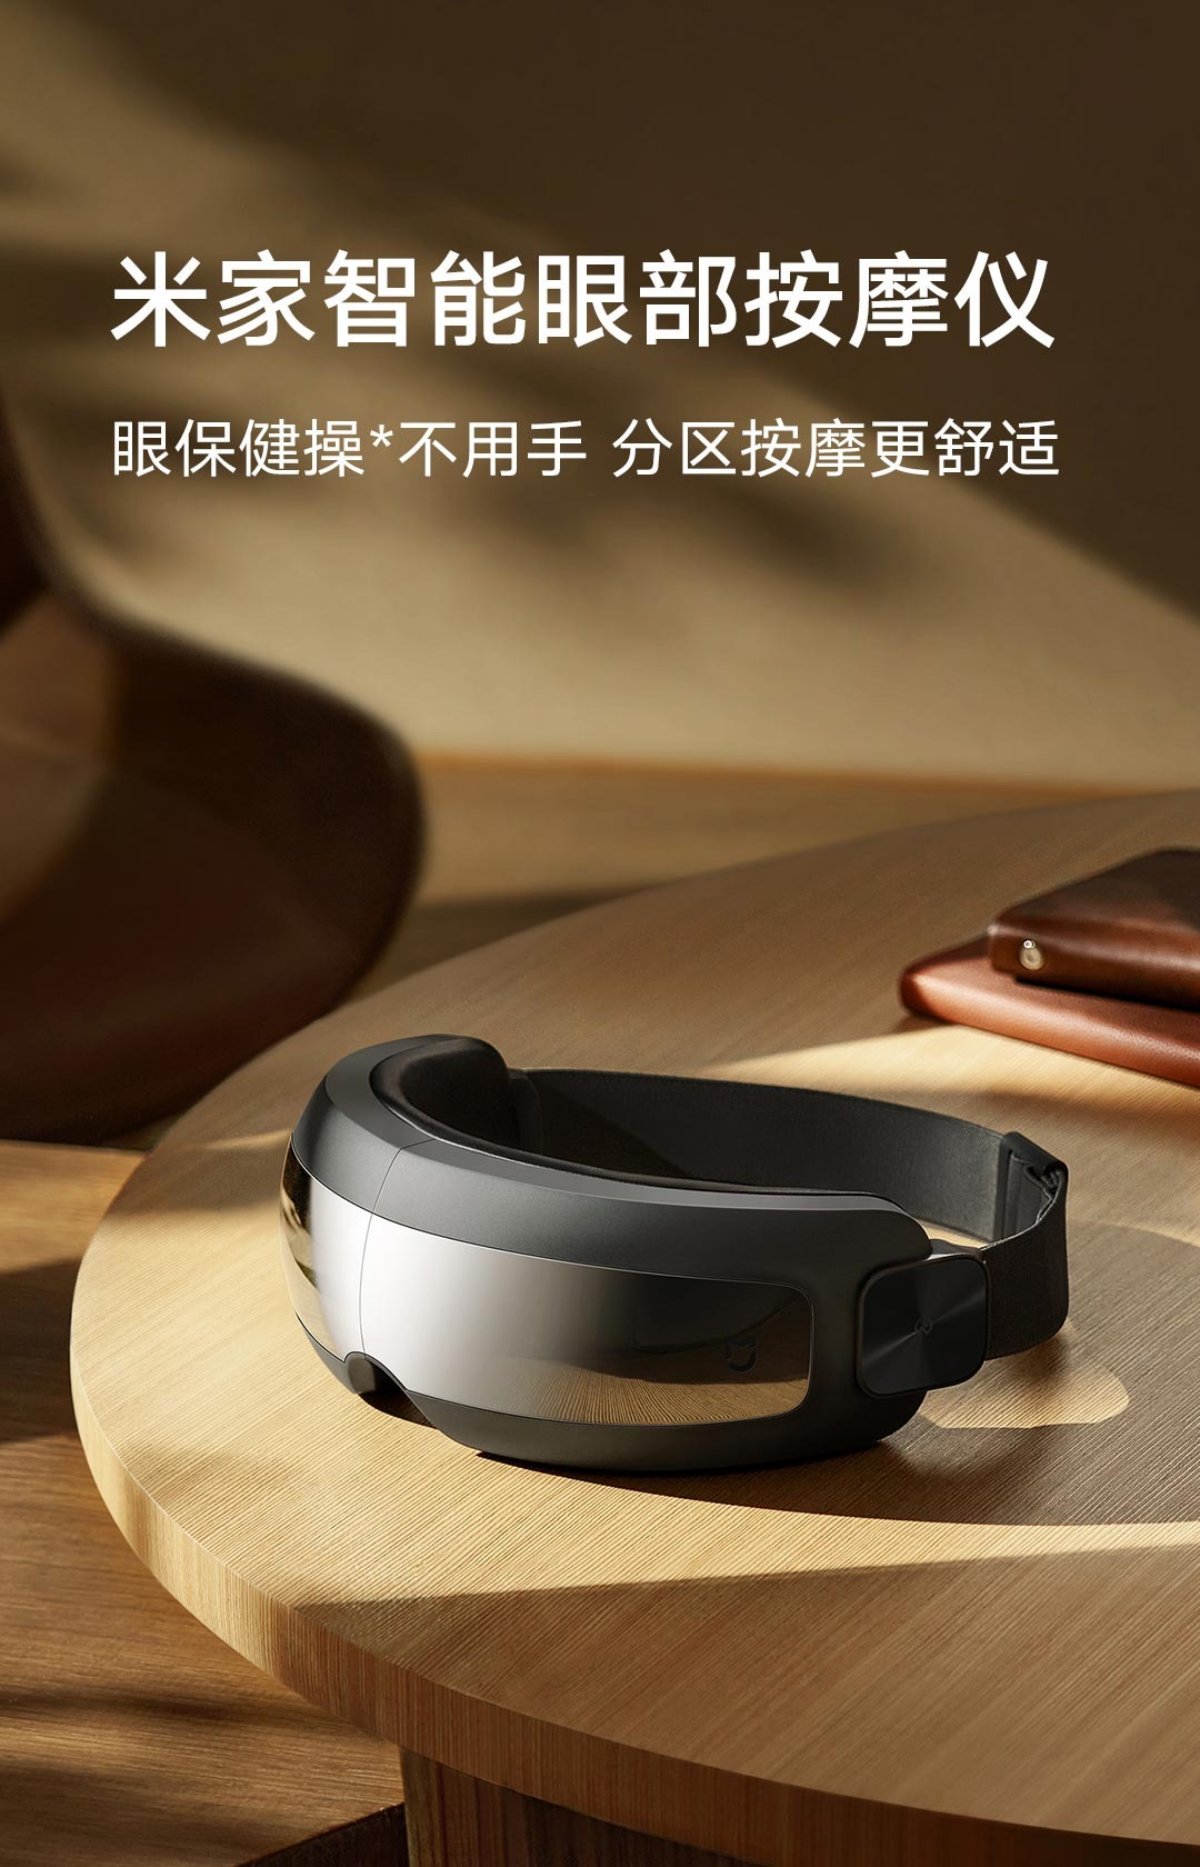 Xiaomi ra mắt máy mát xa mắt thông minh Mijia Smart Eye Massager